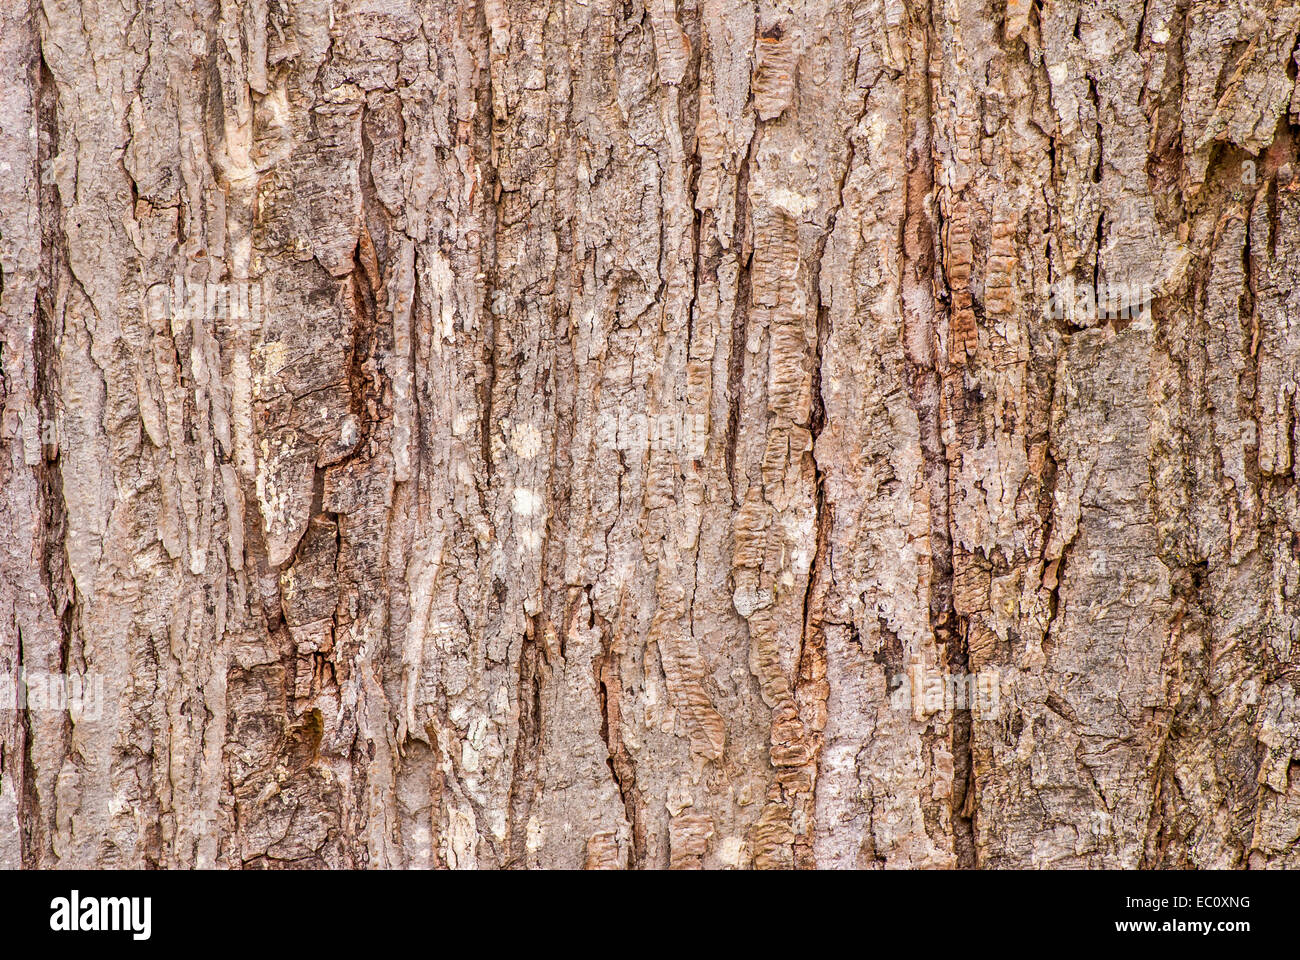 Tree Bark Background for wallpaper or art. Stock Photo